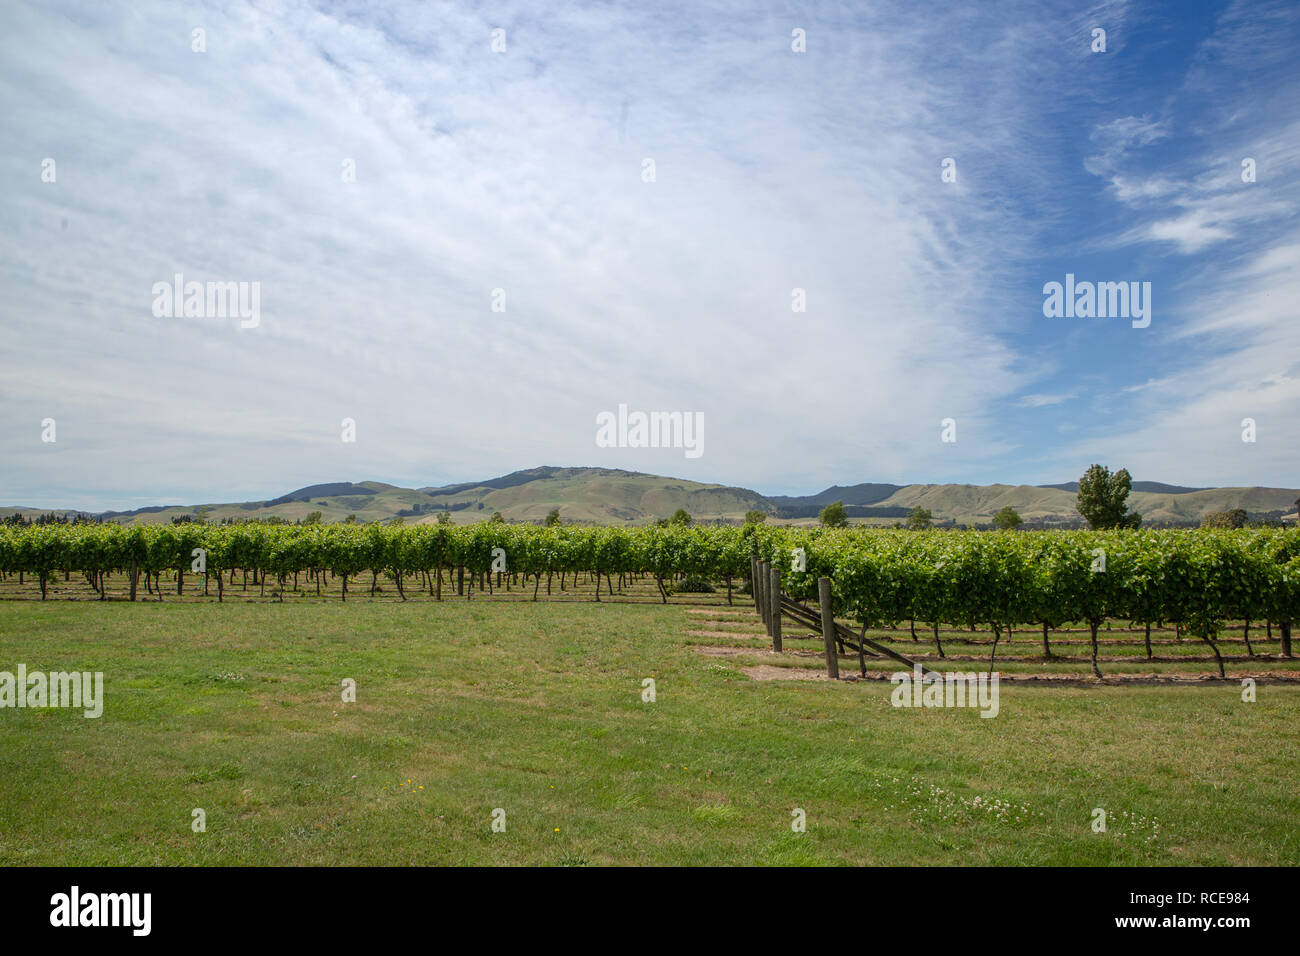 Rows of grapes growing in a Waipara vineyard, New Zealand Stock Photo